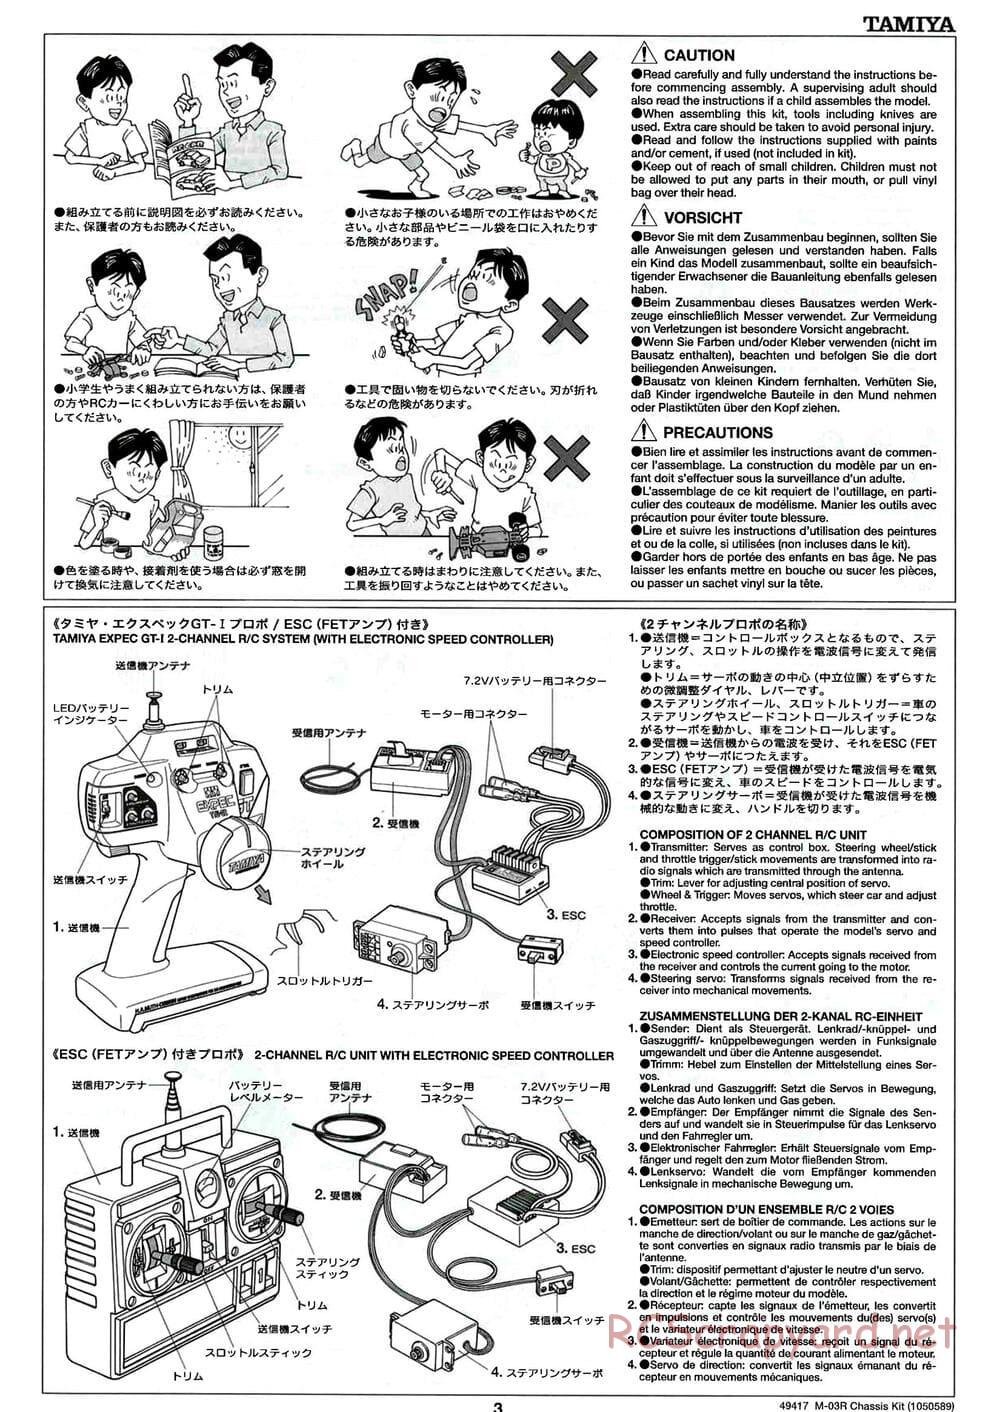 Tamiya - M-03R Chassis - Manual - Page 3